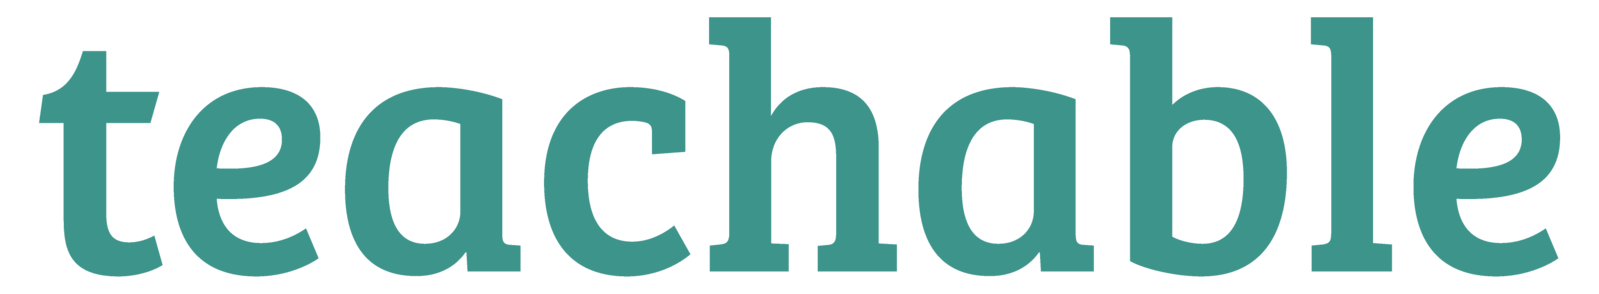 The Teachable official logo